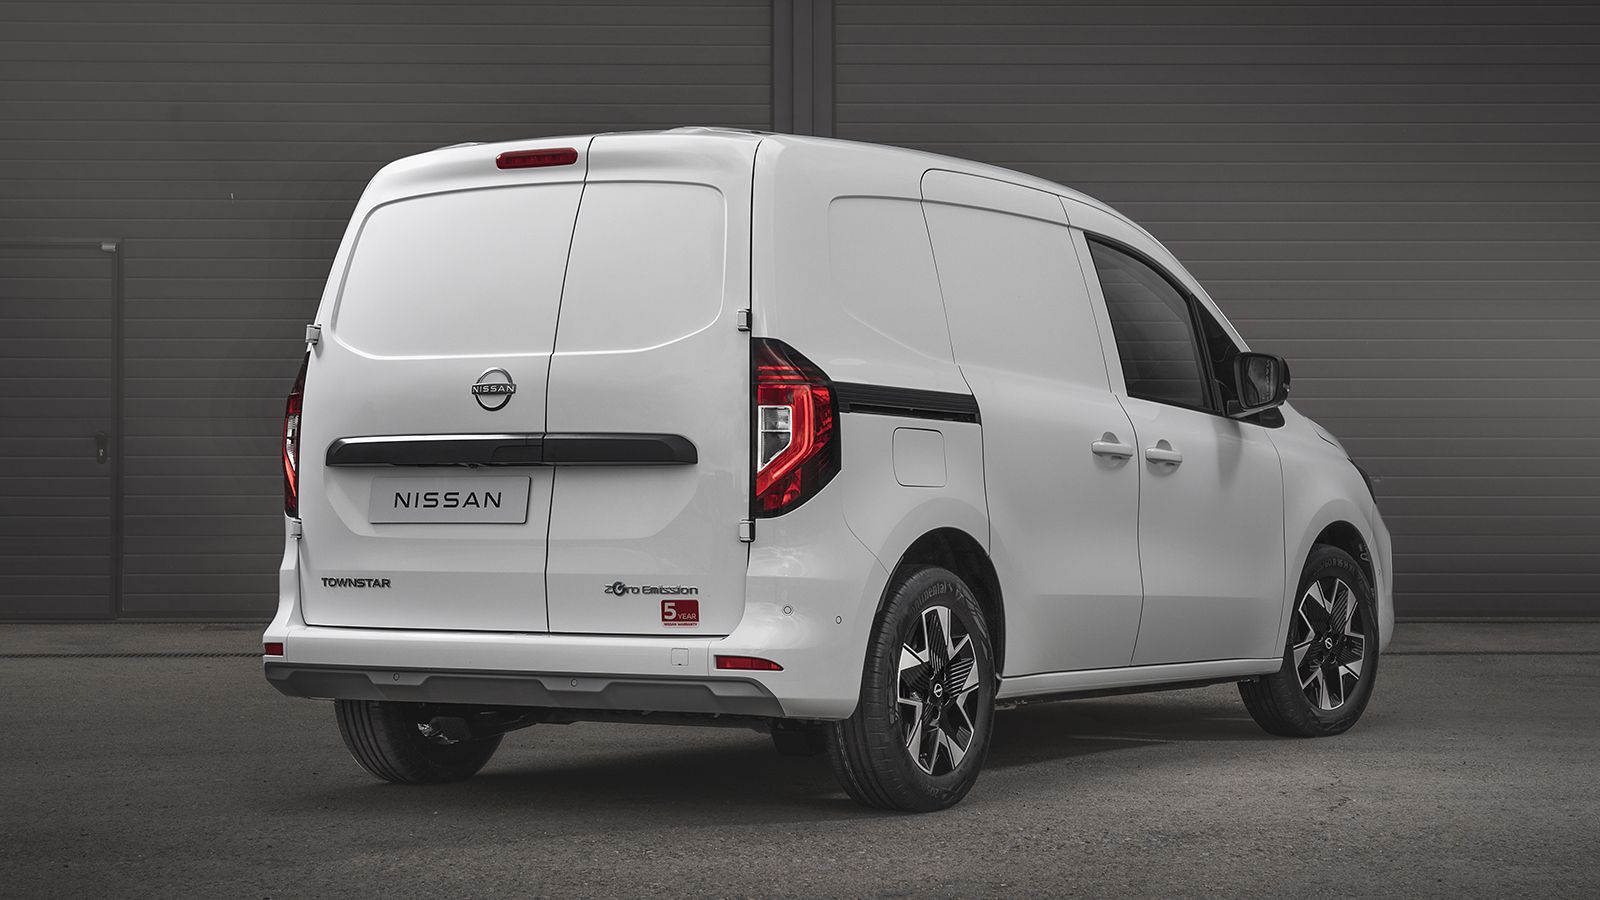 Δύο ευρωπαλέτες θα μπορεί να μεταφέρει το ηλεκτρικό Nissan Townstar στον χώρο φόρτωσης των 3,9 κ.μ. Το μέγιστο ωφέλιμο φορτίο ορίζεται στα 800 κιλά.